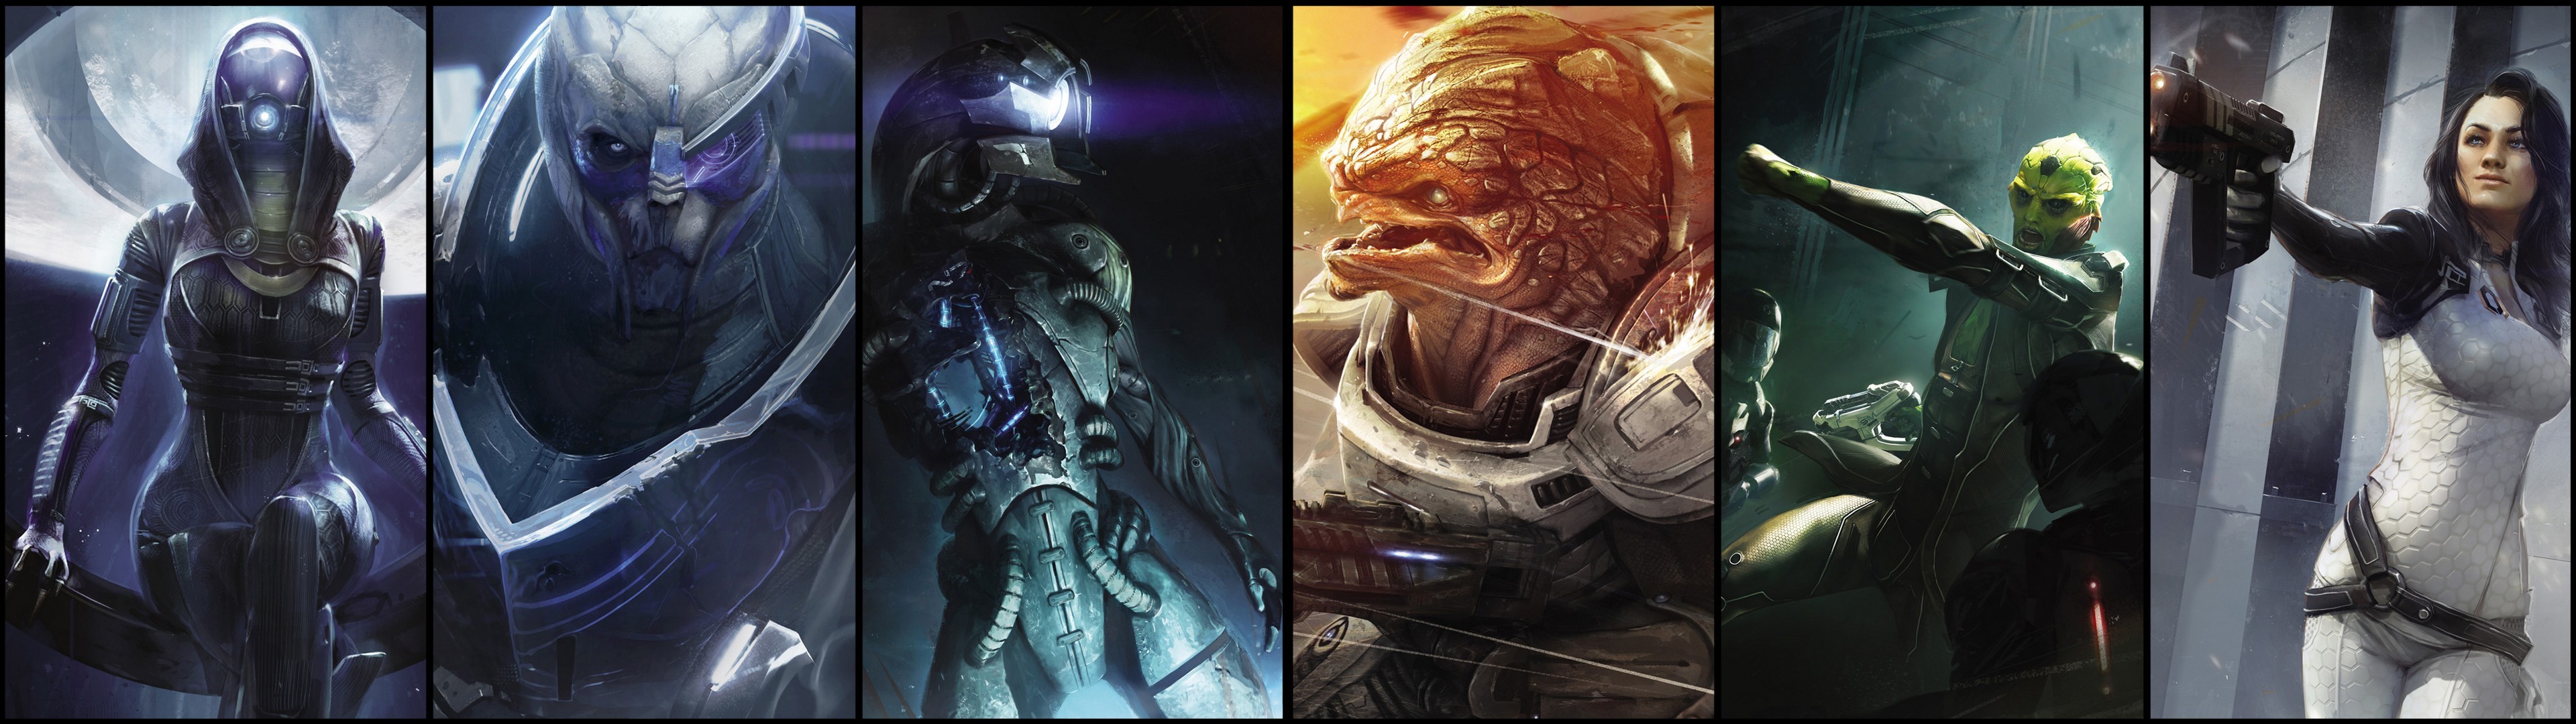 Mass Effect Collage Video Games Mass Effect Wallpaper Resolution X Id